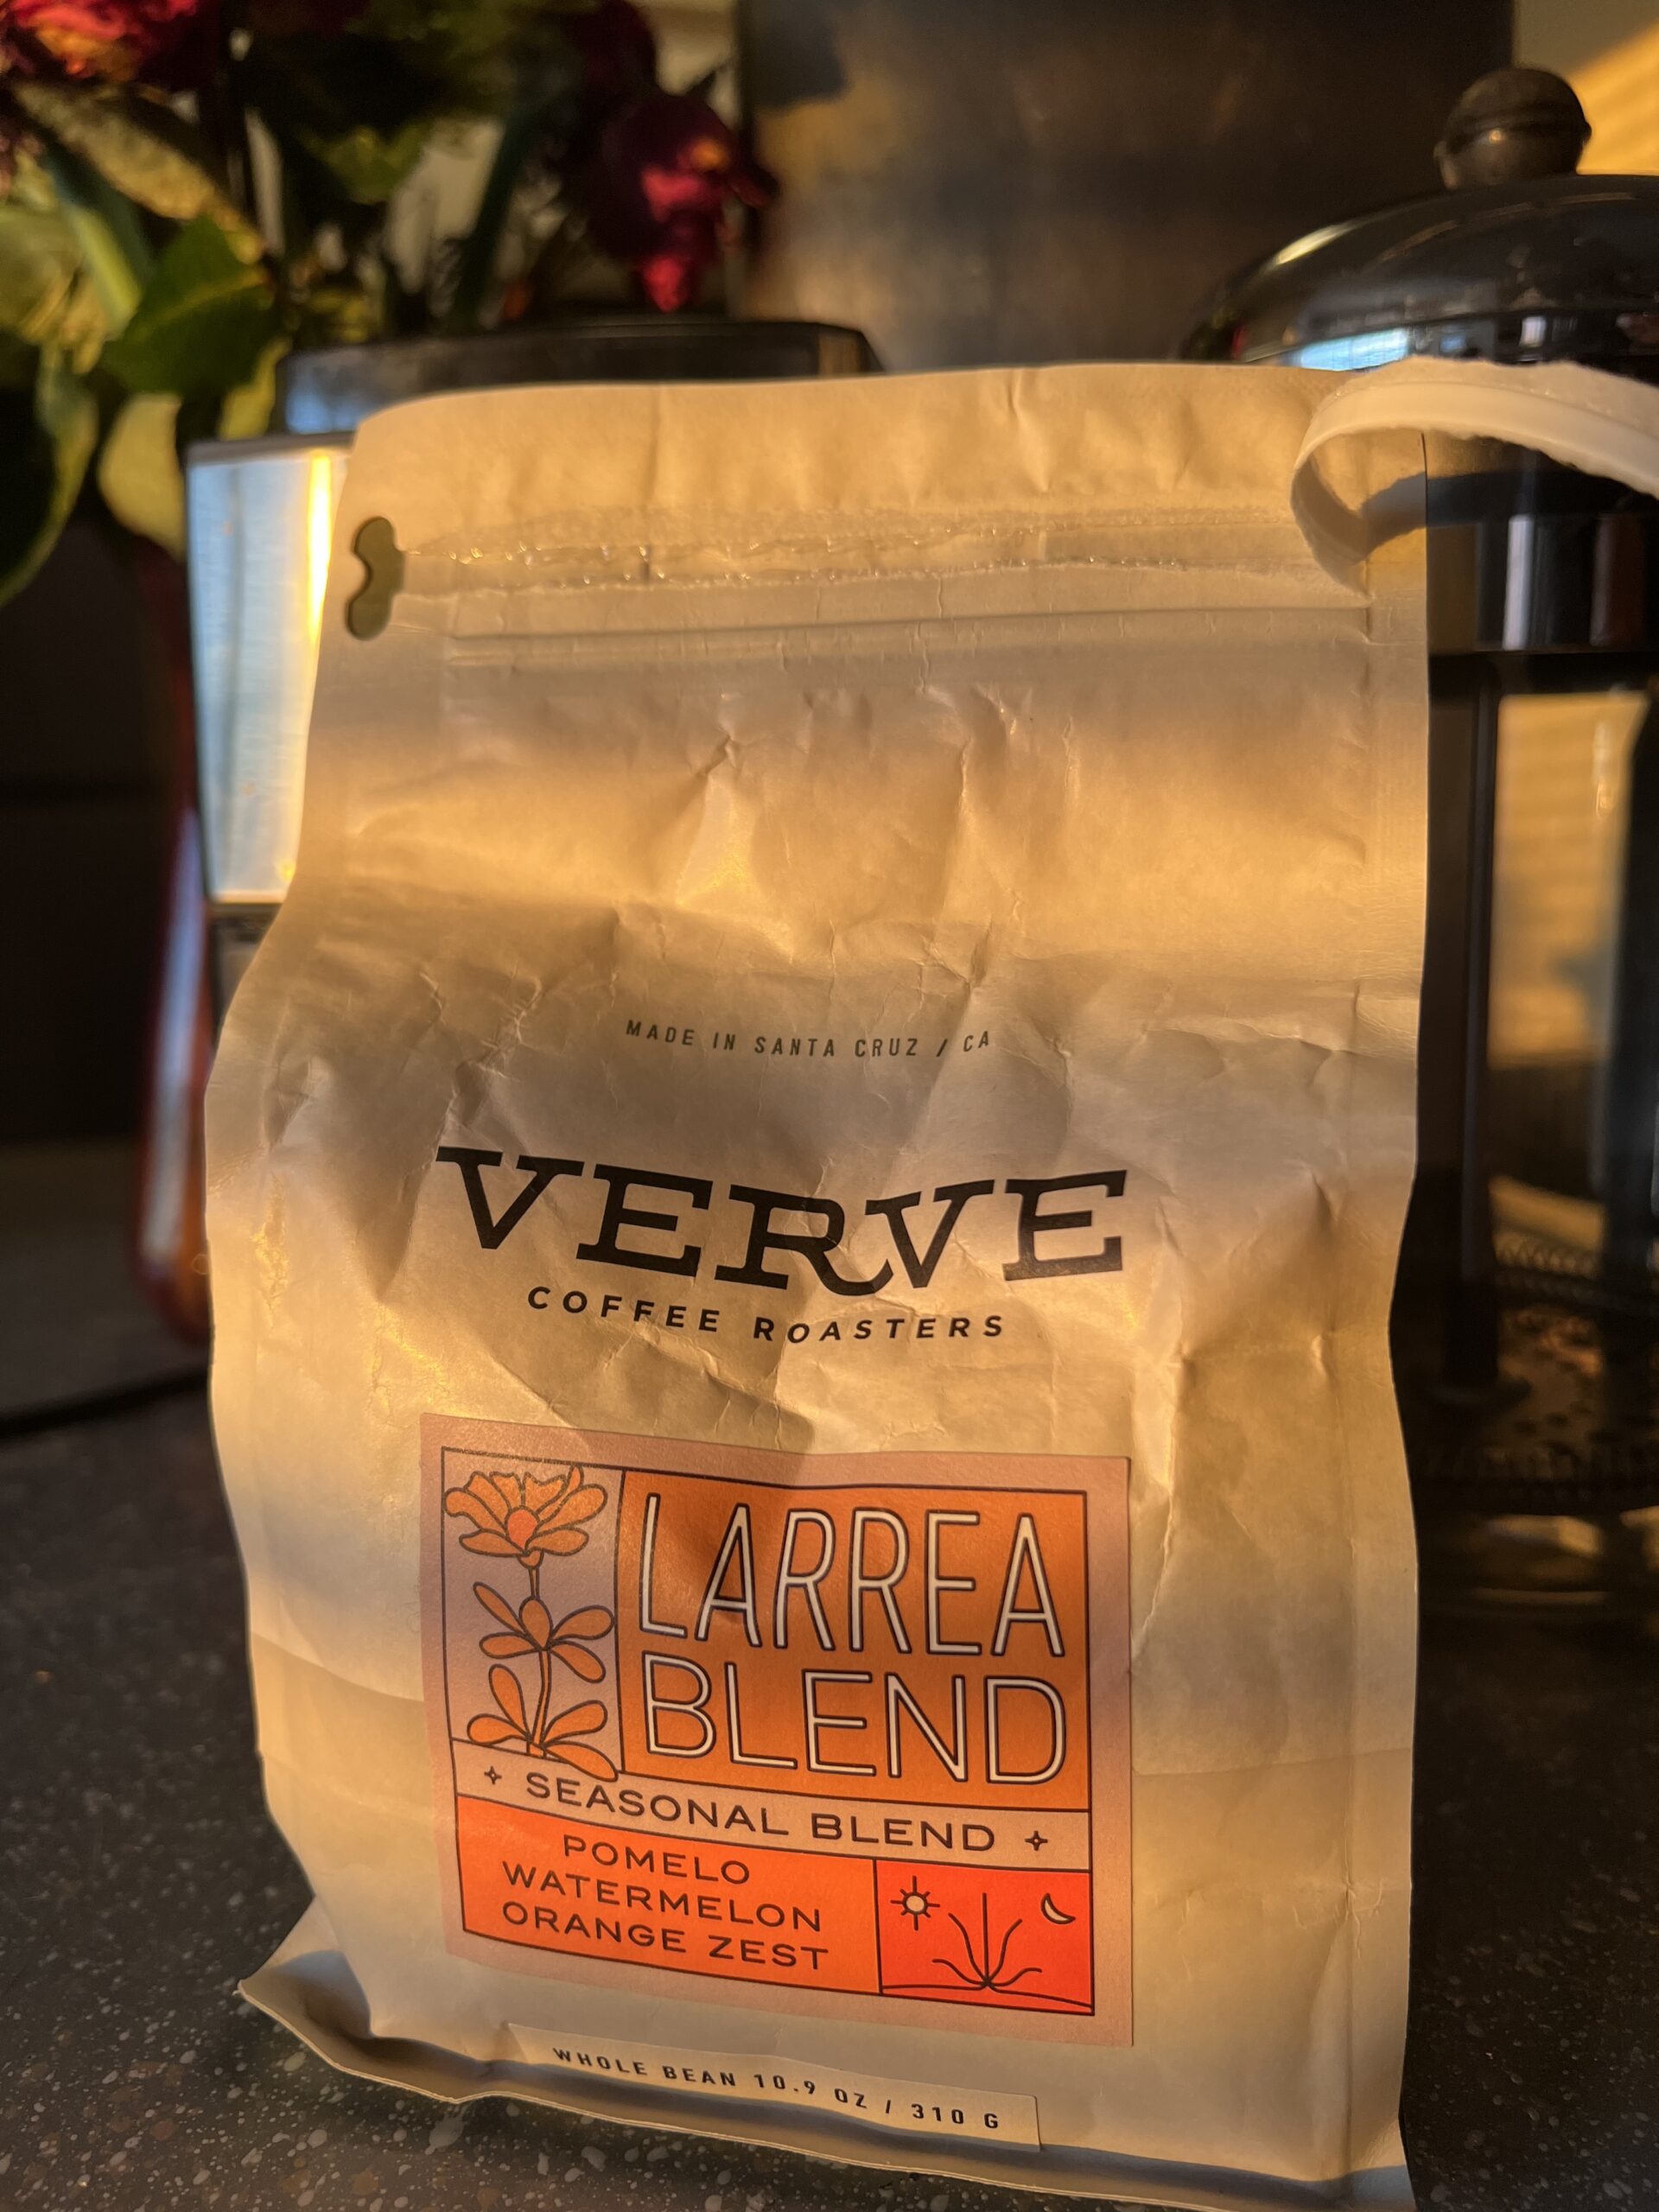 Крупныый план упаковки Verve Coffee